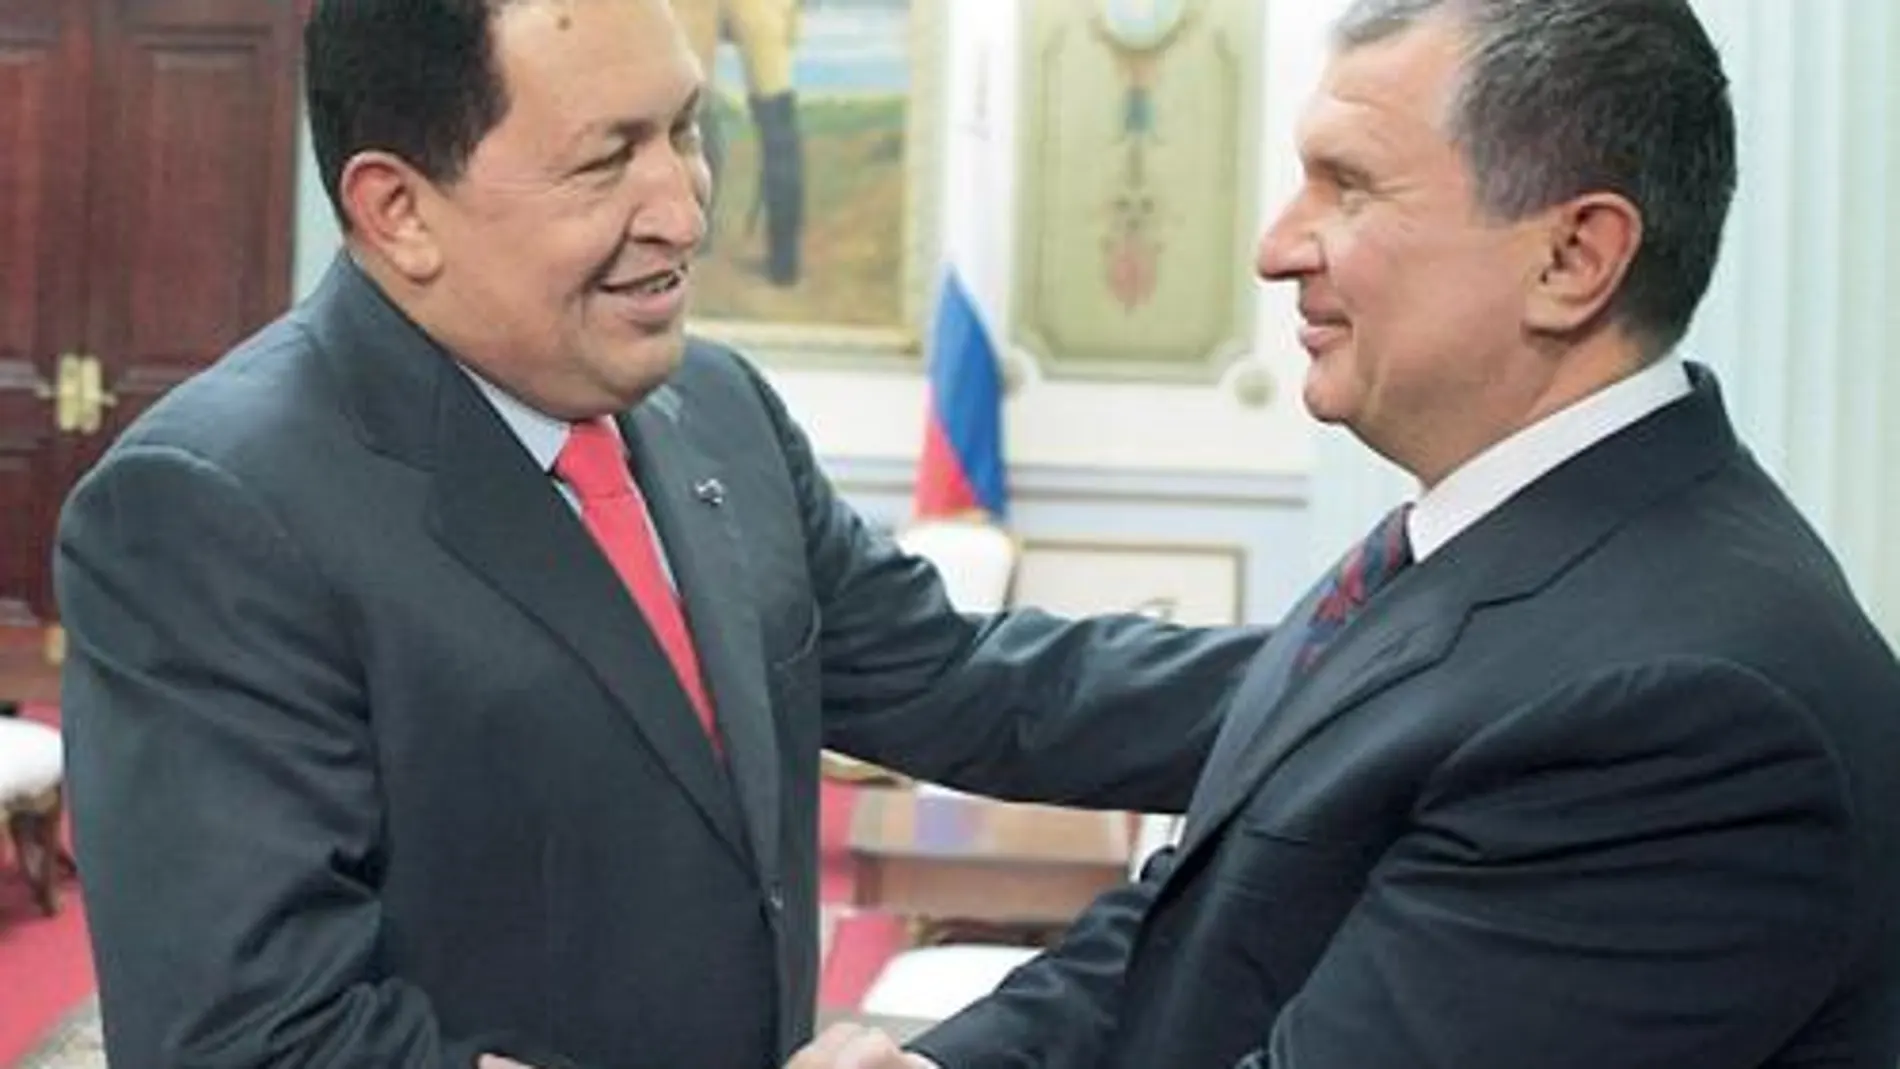 Chávez saluda al viceprimer ministro ruso, Igor Sechin